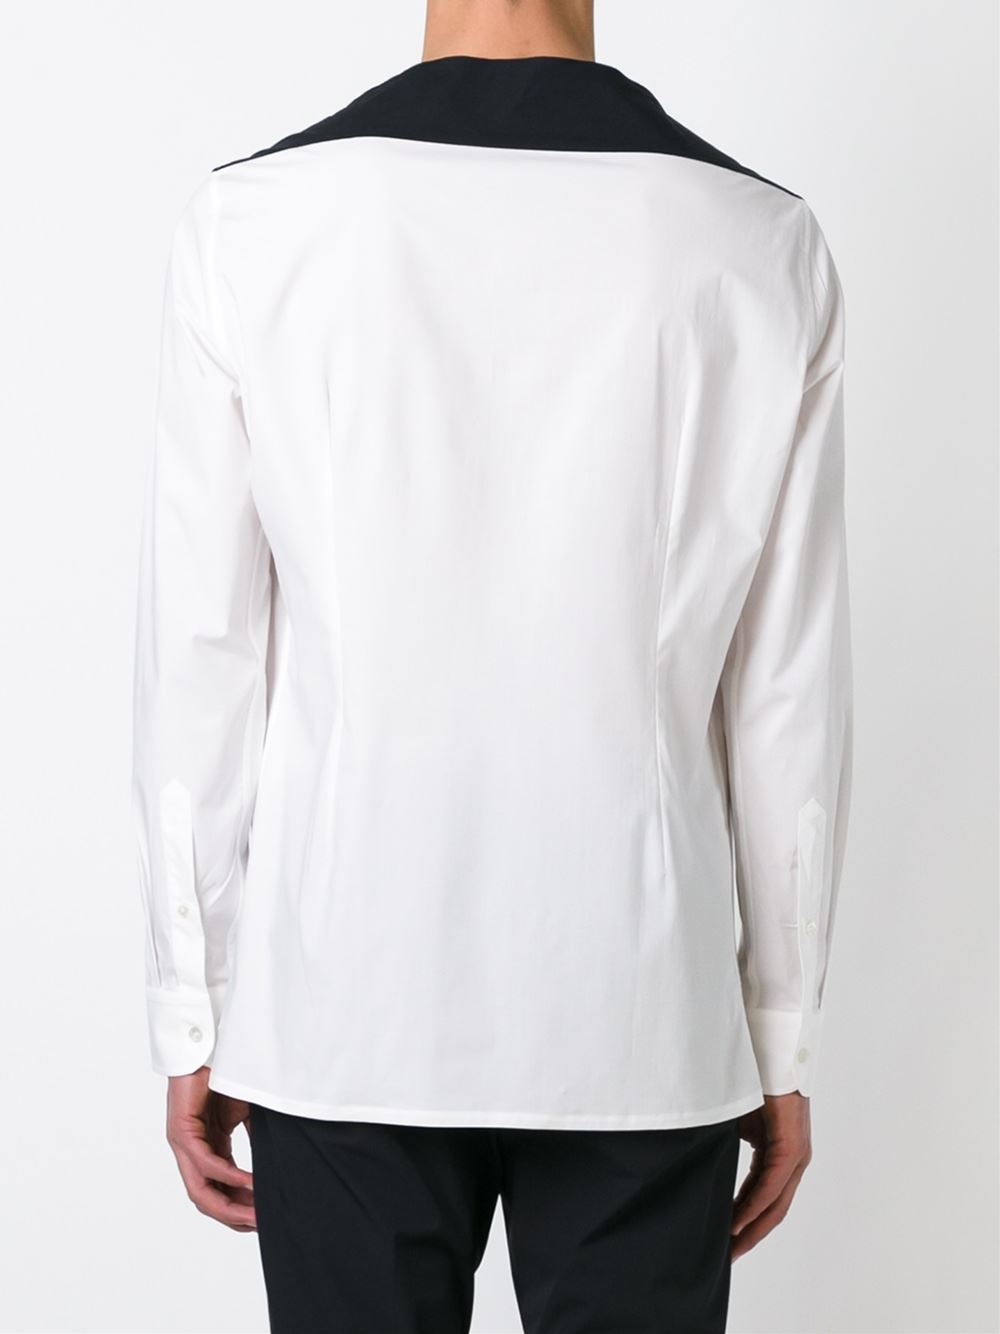 Raf Simons Long Sleeve Buttonless Shirt in White for Men - Lyst